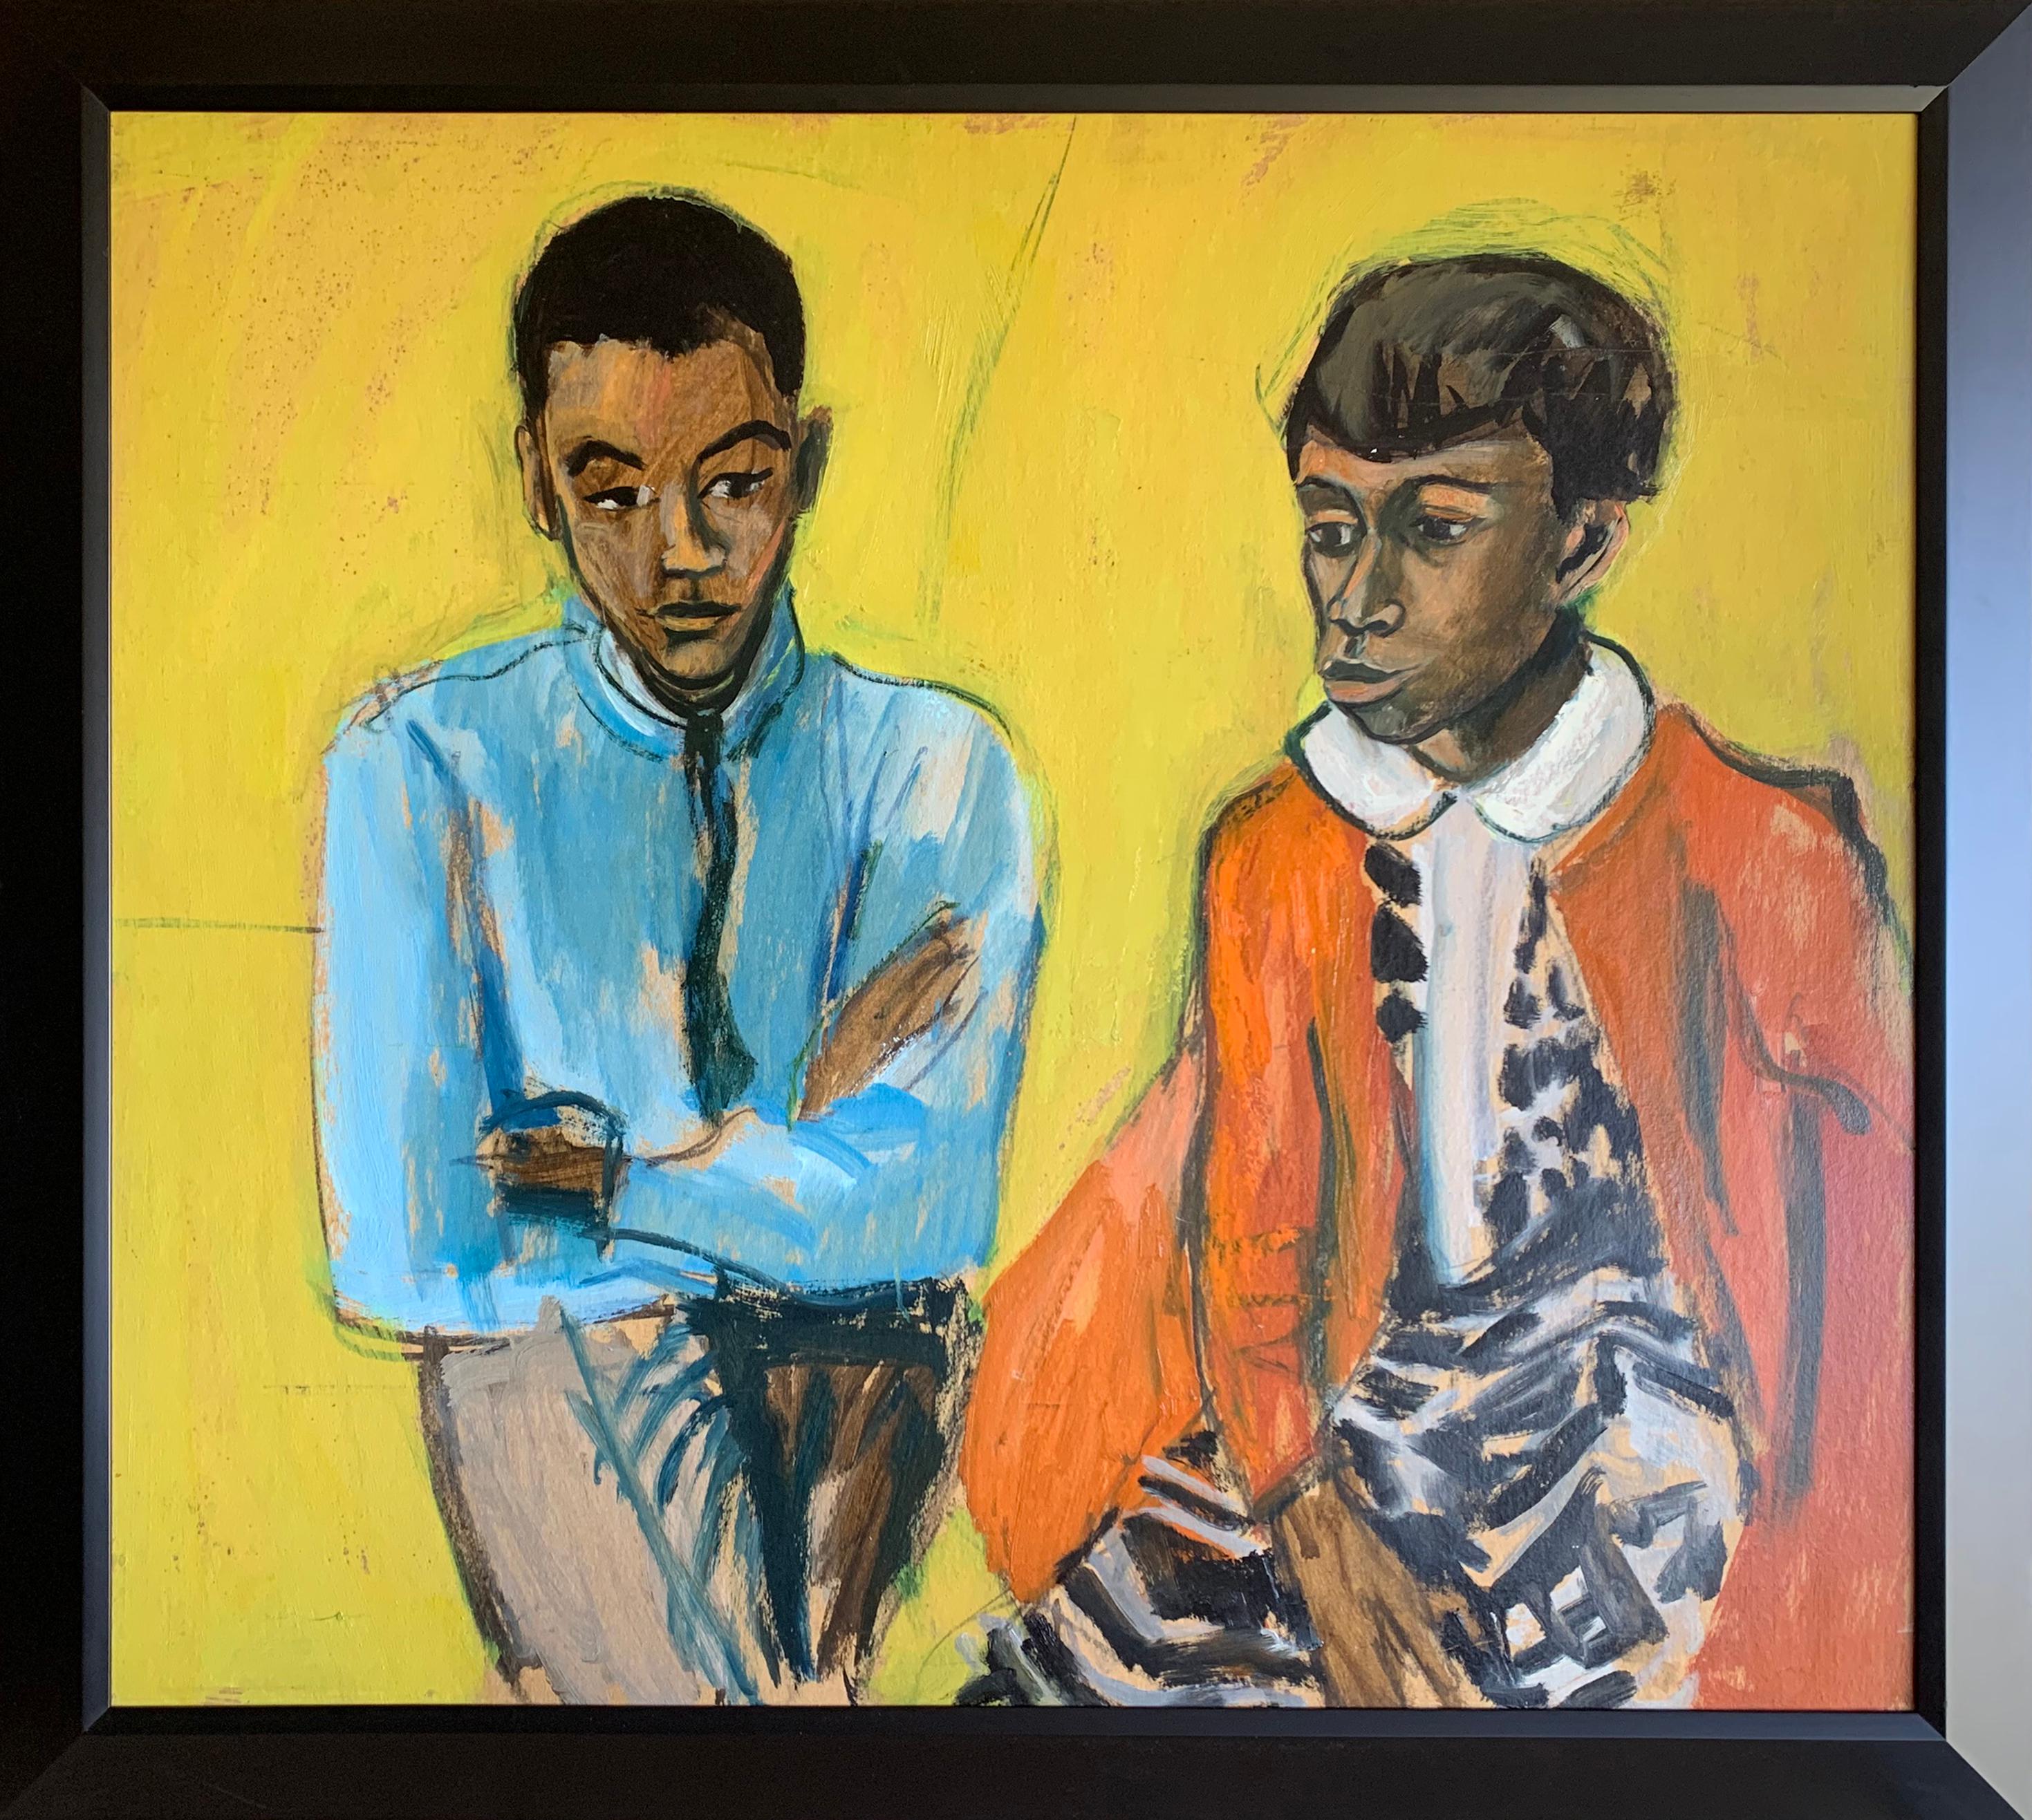 Nicht sprechendes, expressionistisches Porträt von Mutter und Sohn des Künstlers – Painting von Bernard Harmon